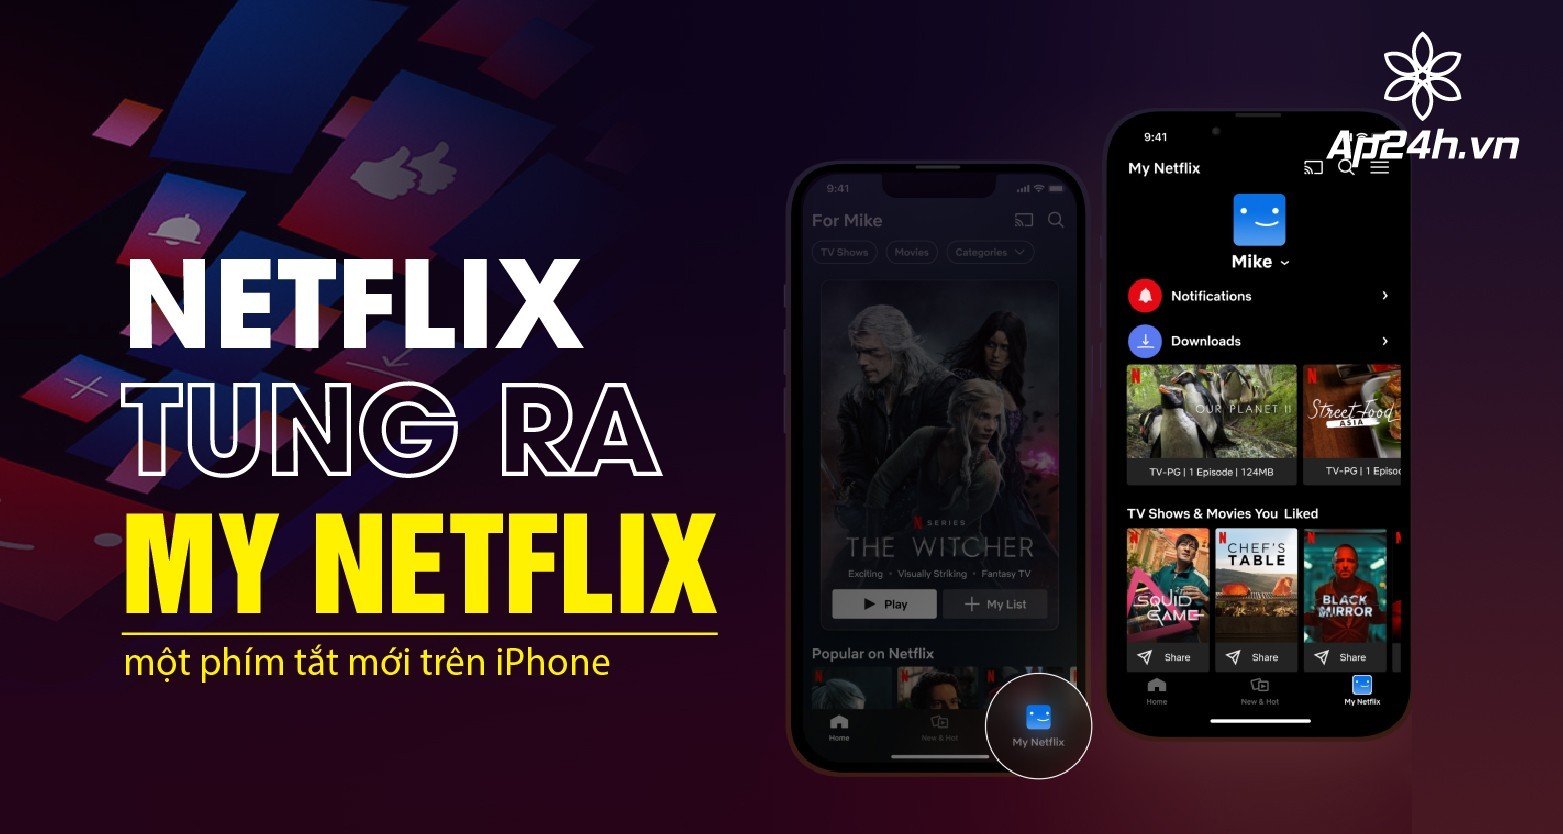 Netflix tung ra My Netflix, một phím tắt mới trên iPhone 